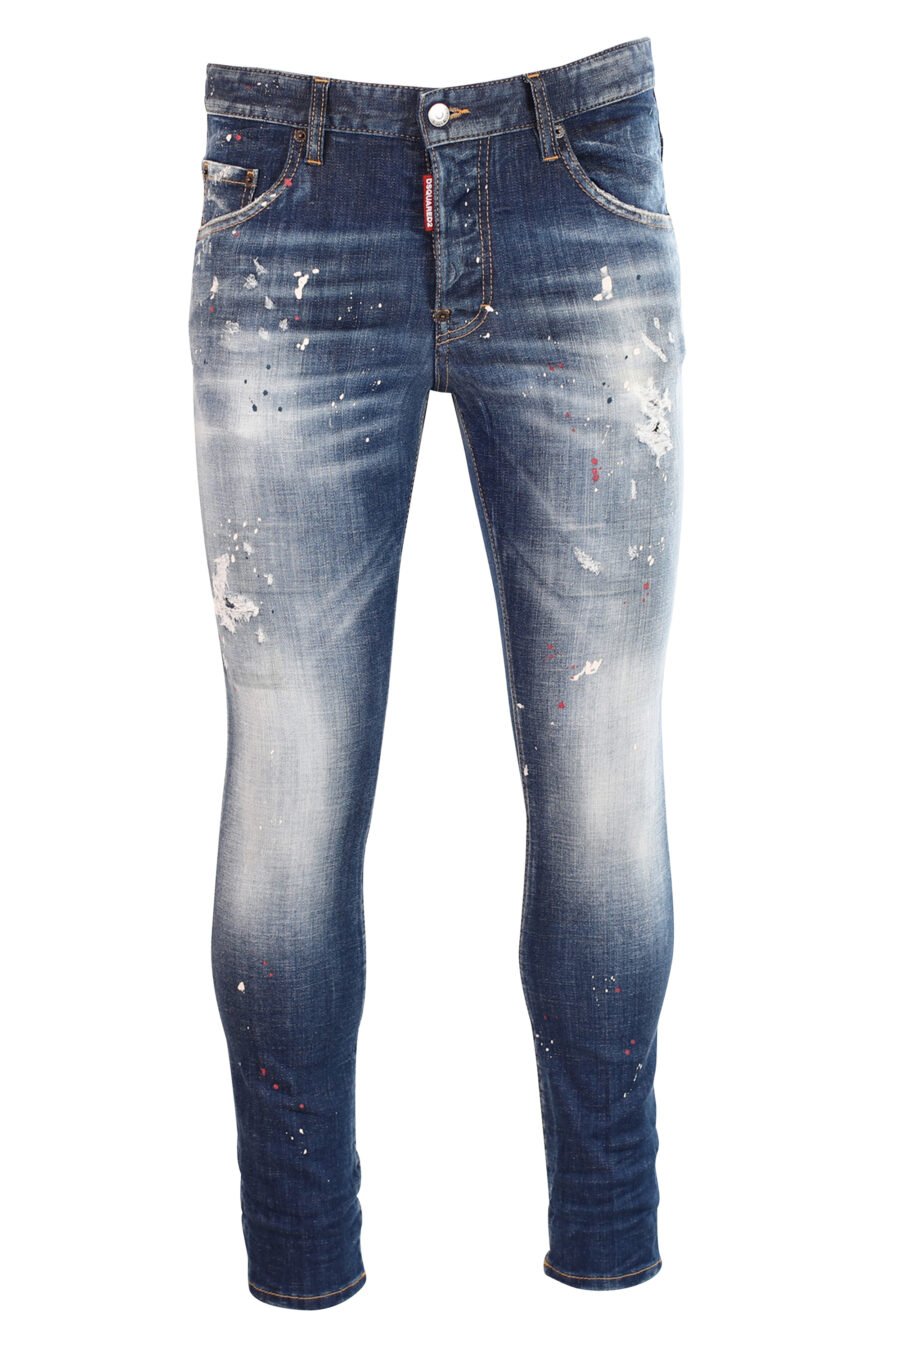 Semi-getragene blaue "Skater"-Jeans mit Farbe und Rissen - 8052134940020